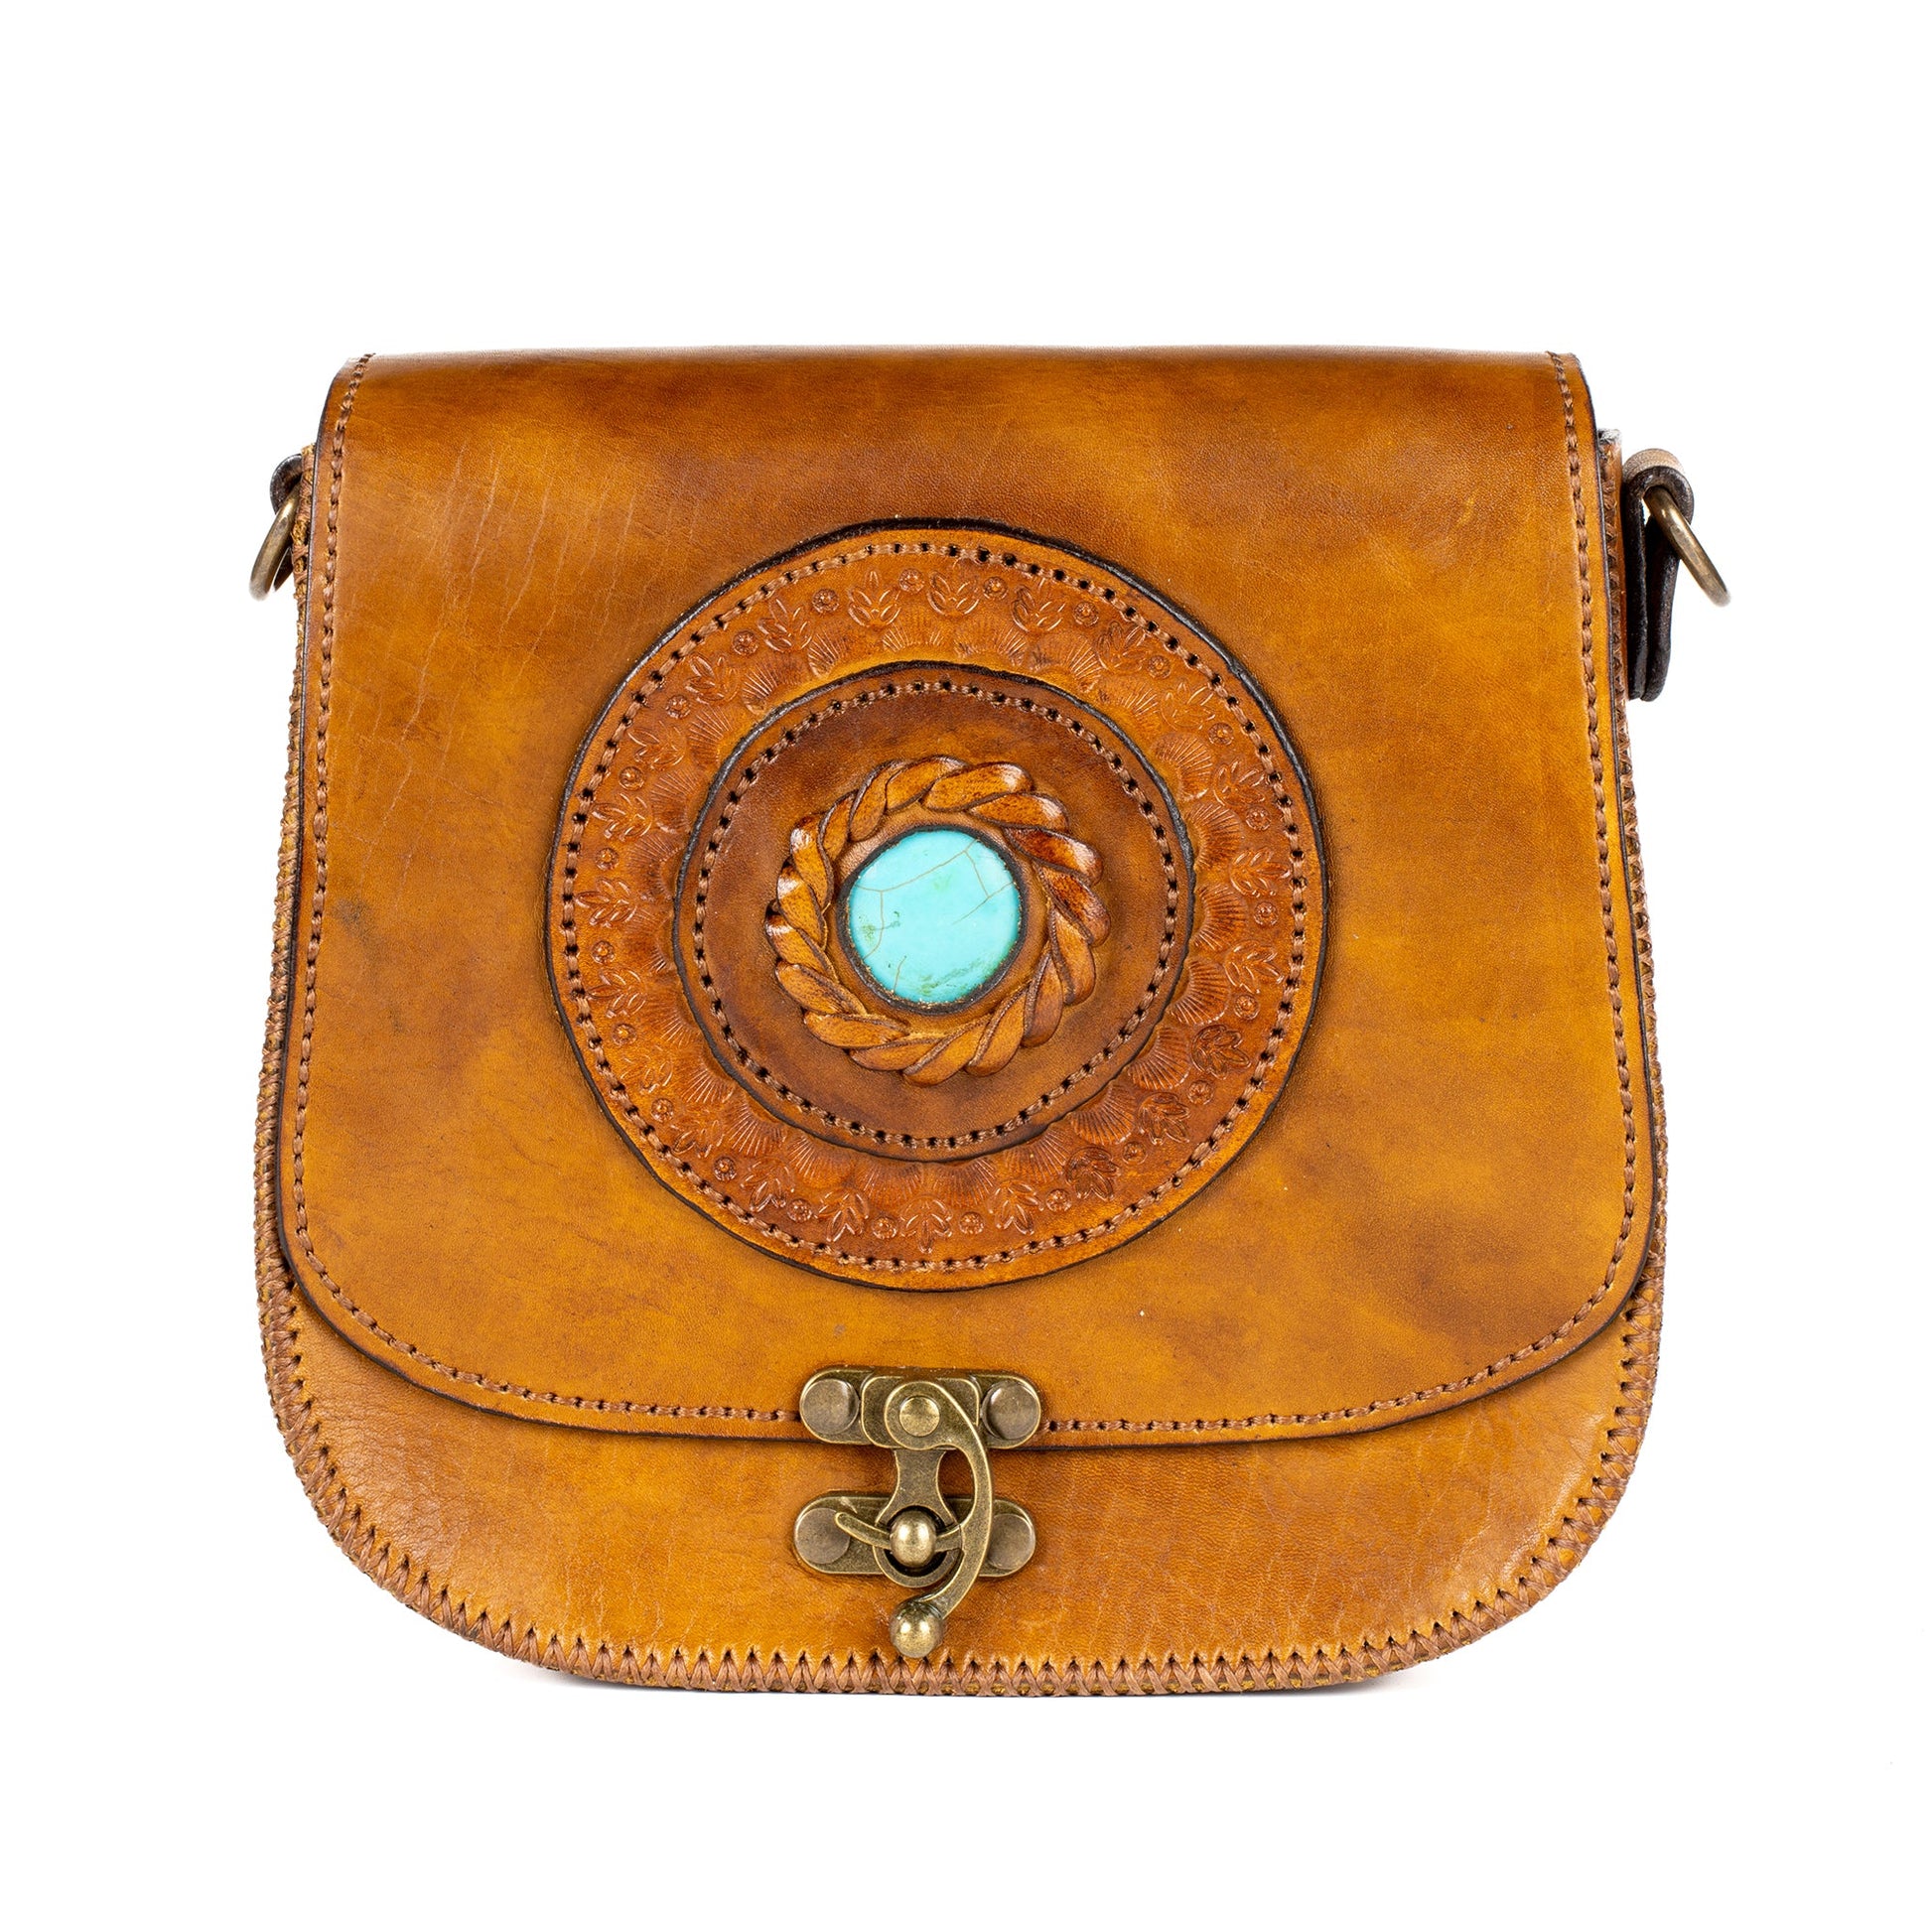 Serene Spell Leather Women’s Crossbody Bag - Tan - Bags Zengoda Shop online from Artisan Brands